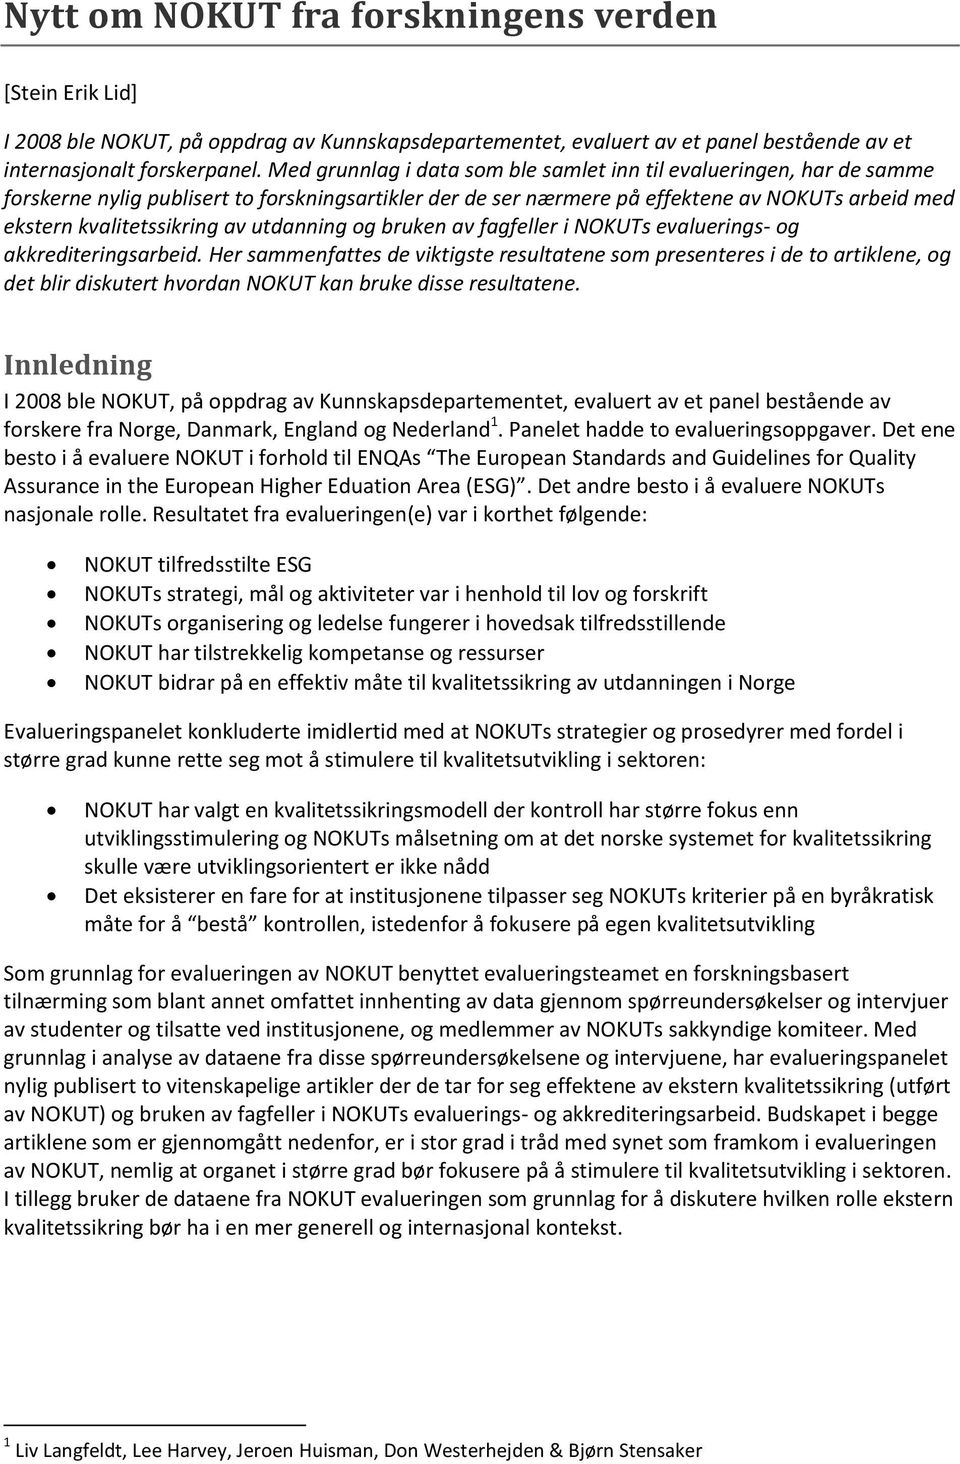 utdanning og bruken av fagfeller i NOKUTs evaluerings- og akkrediteringsarbeid.